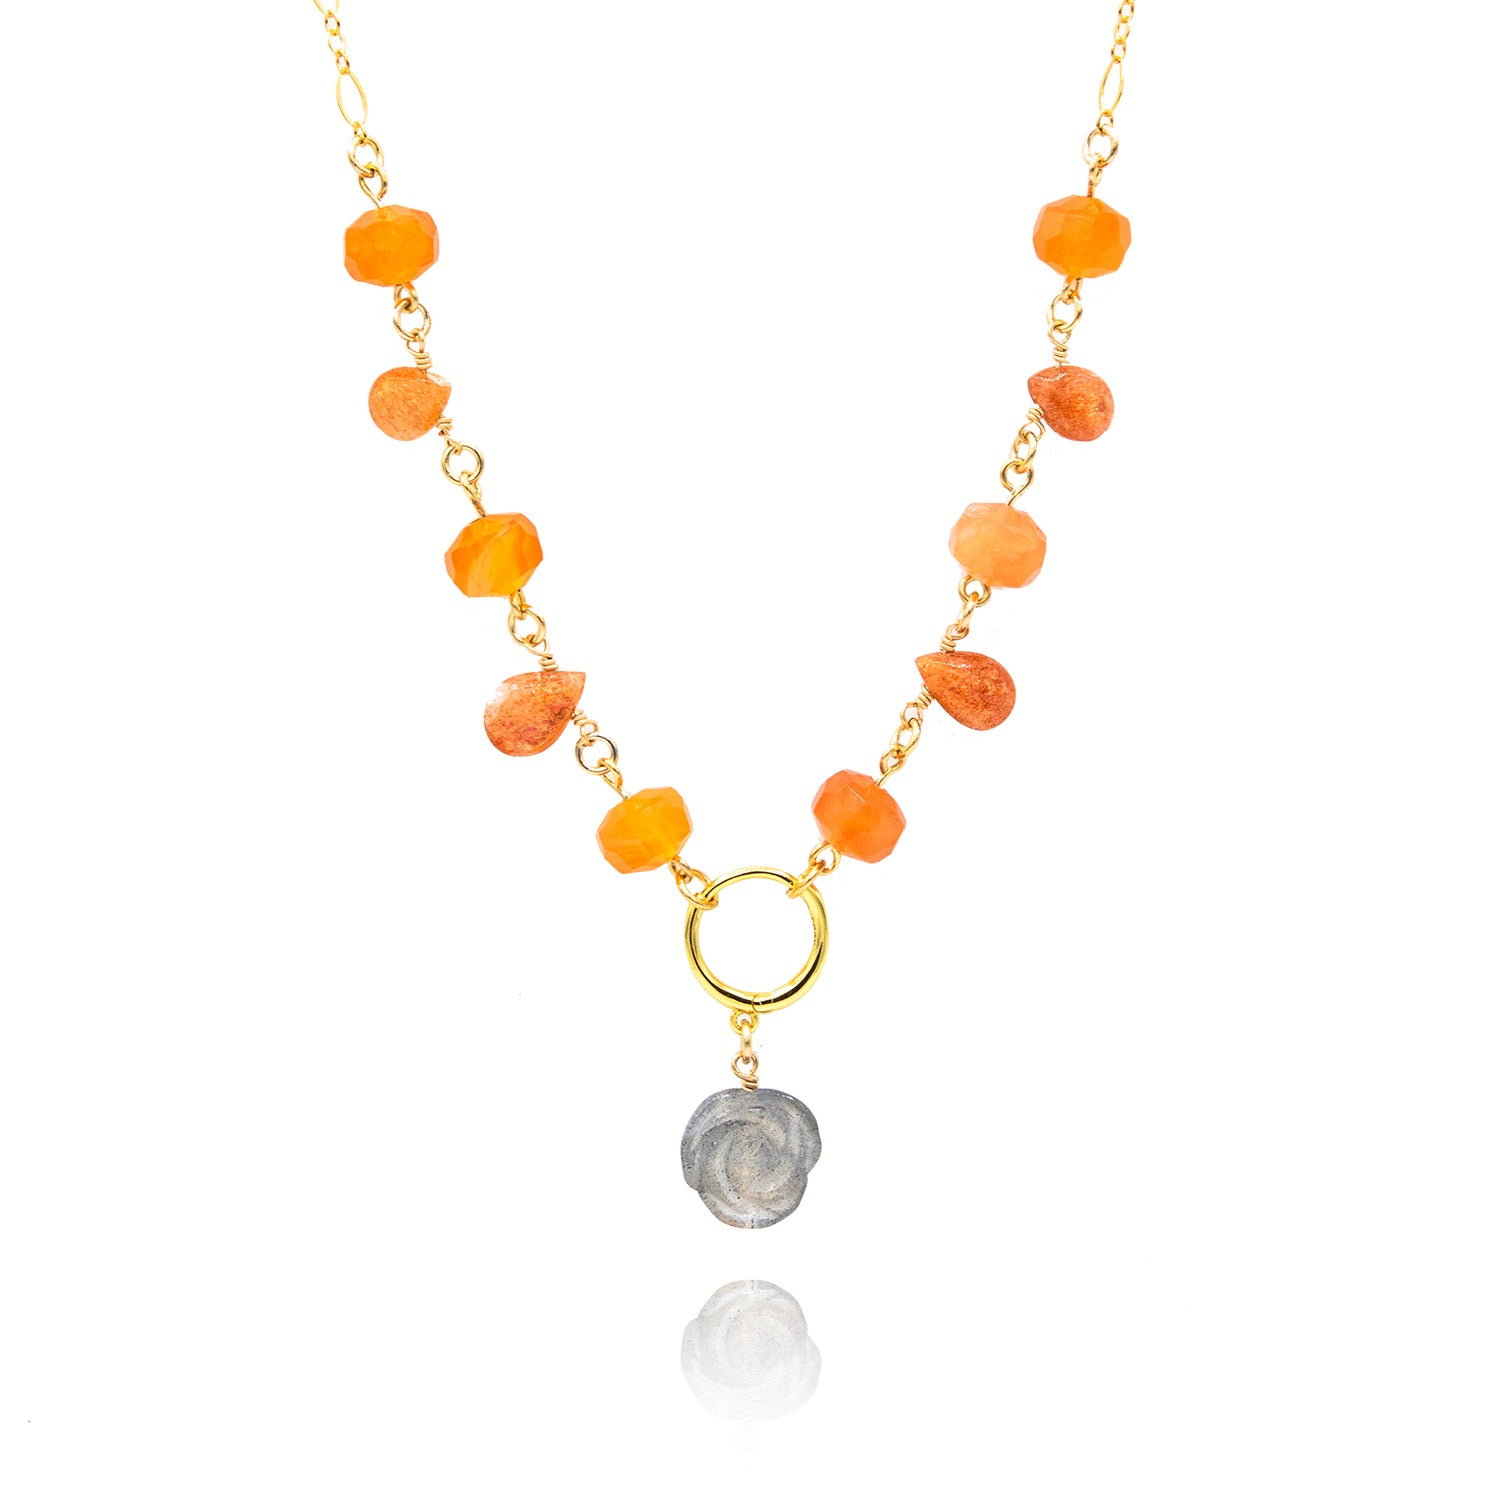 Ethereal Orange Necklace